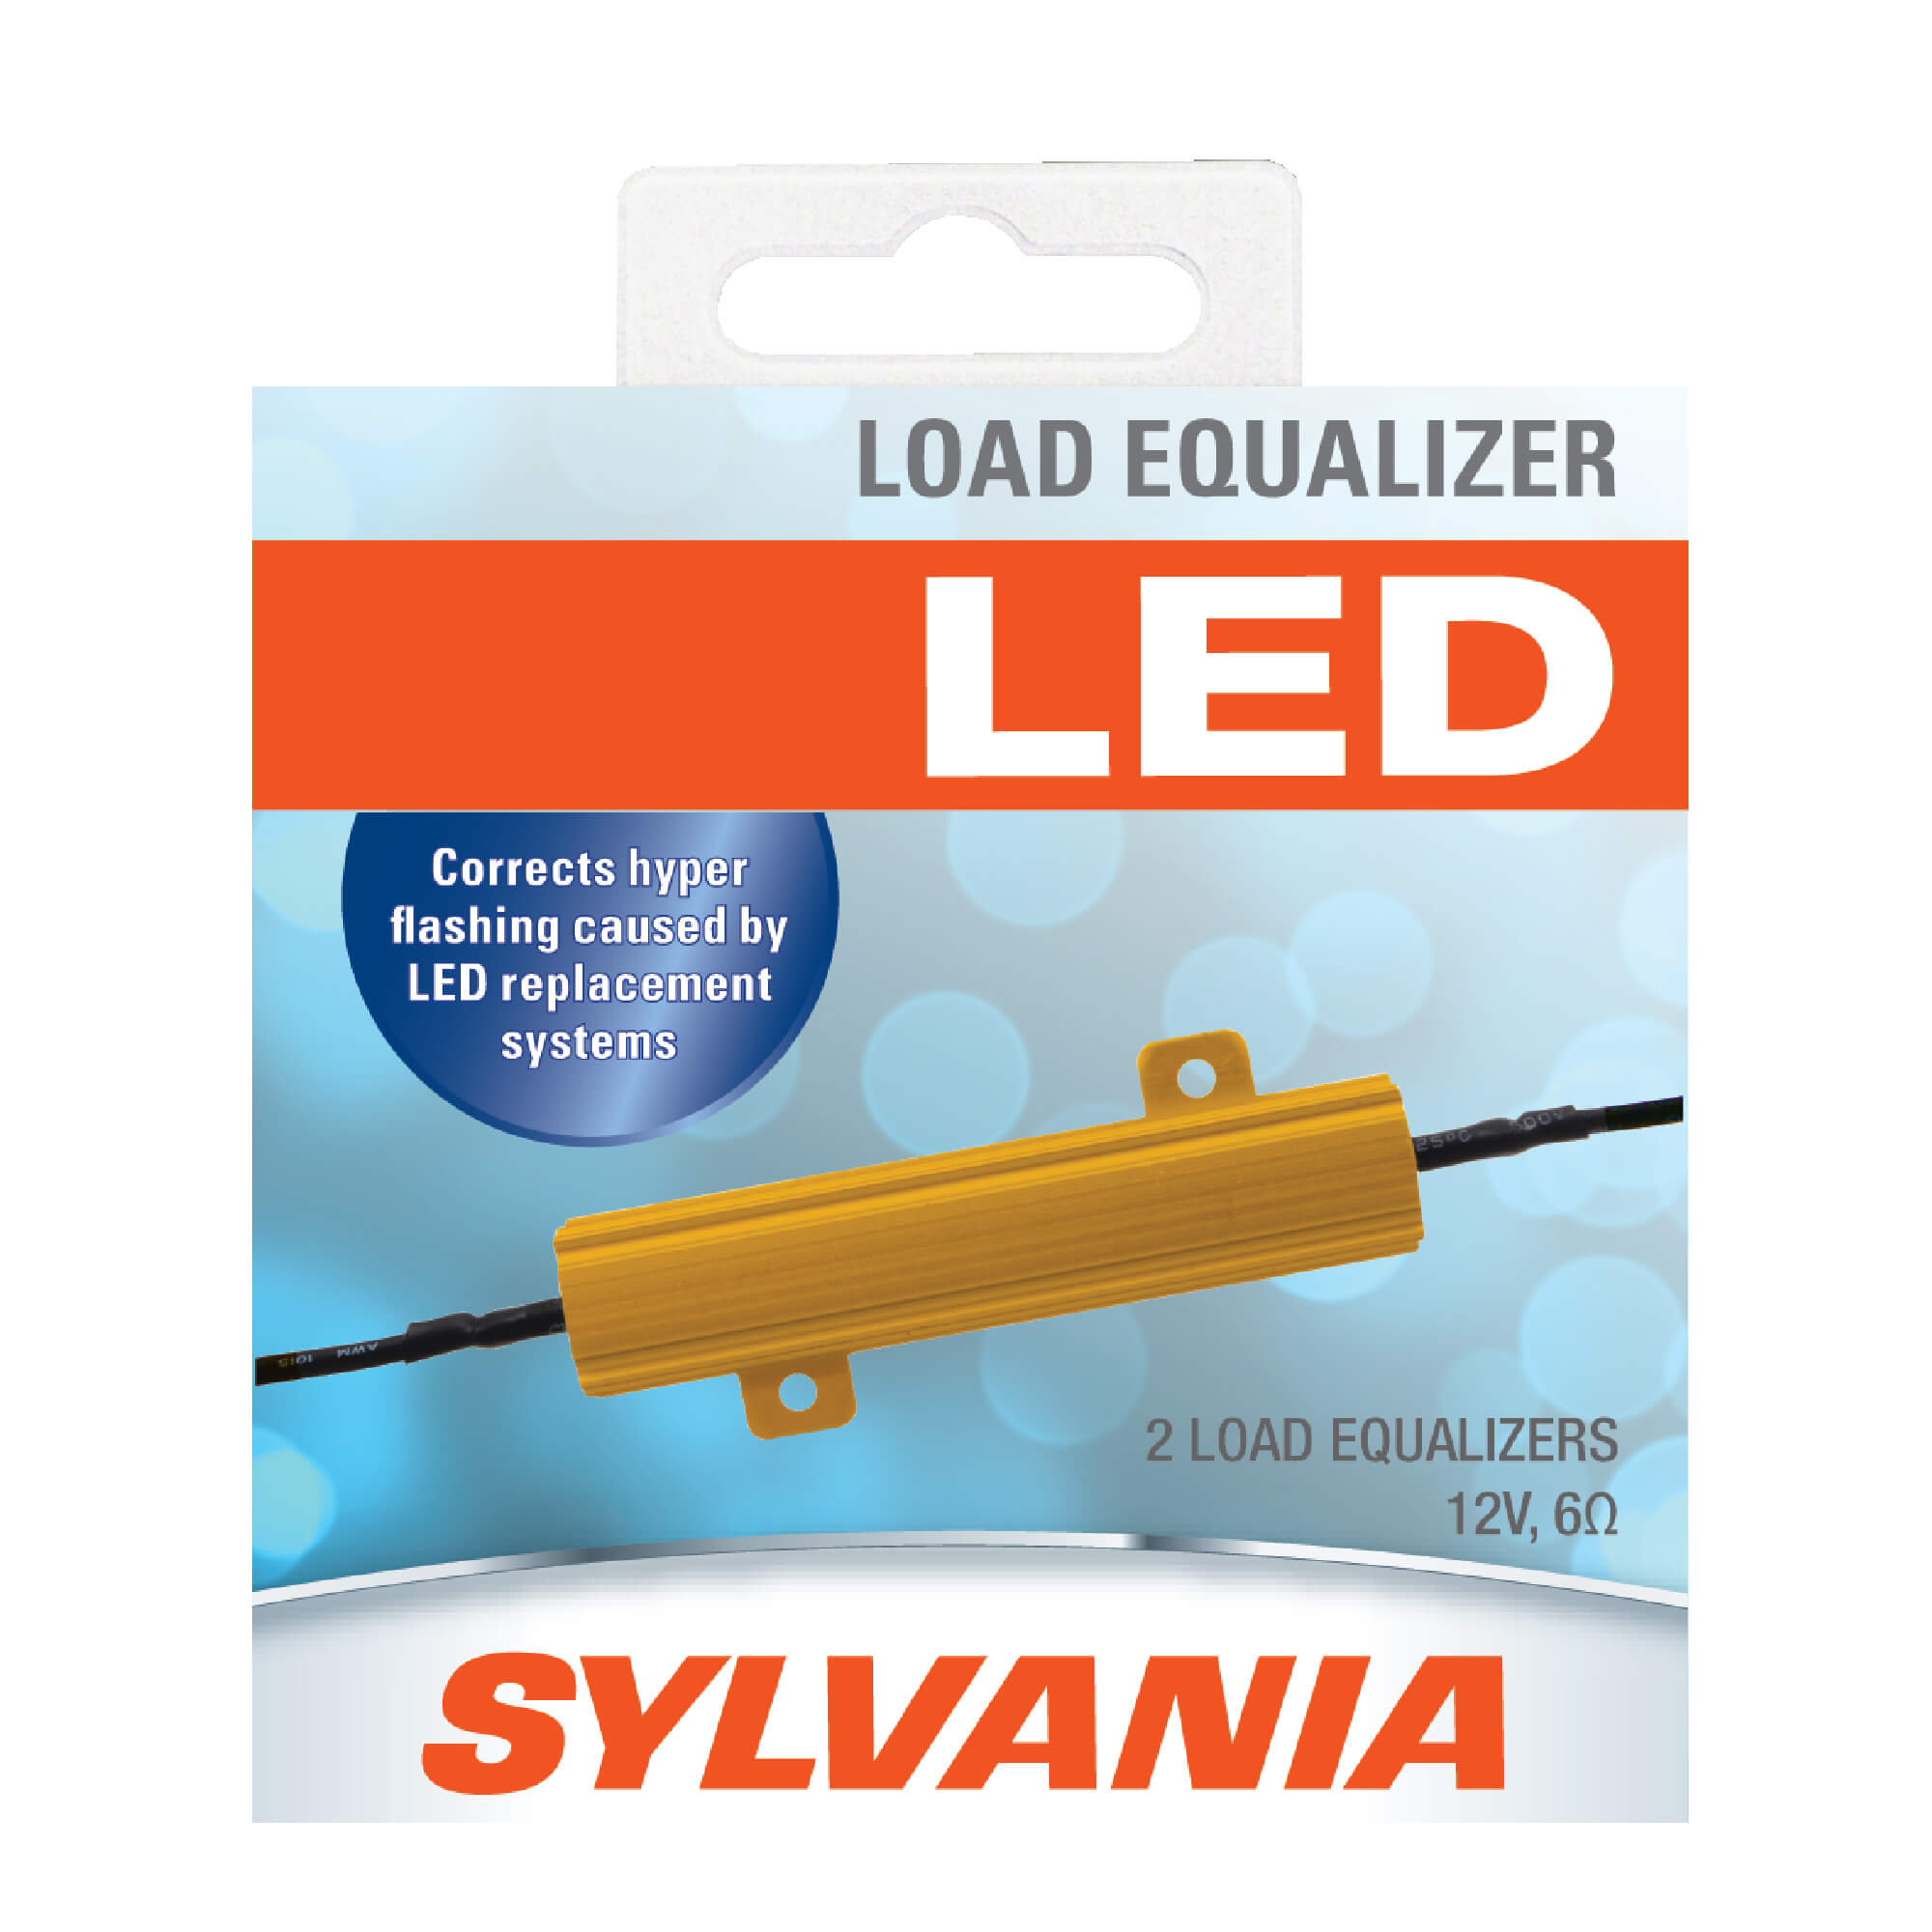 LED Brake Fluid Tester, Mountain